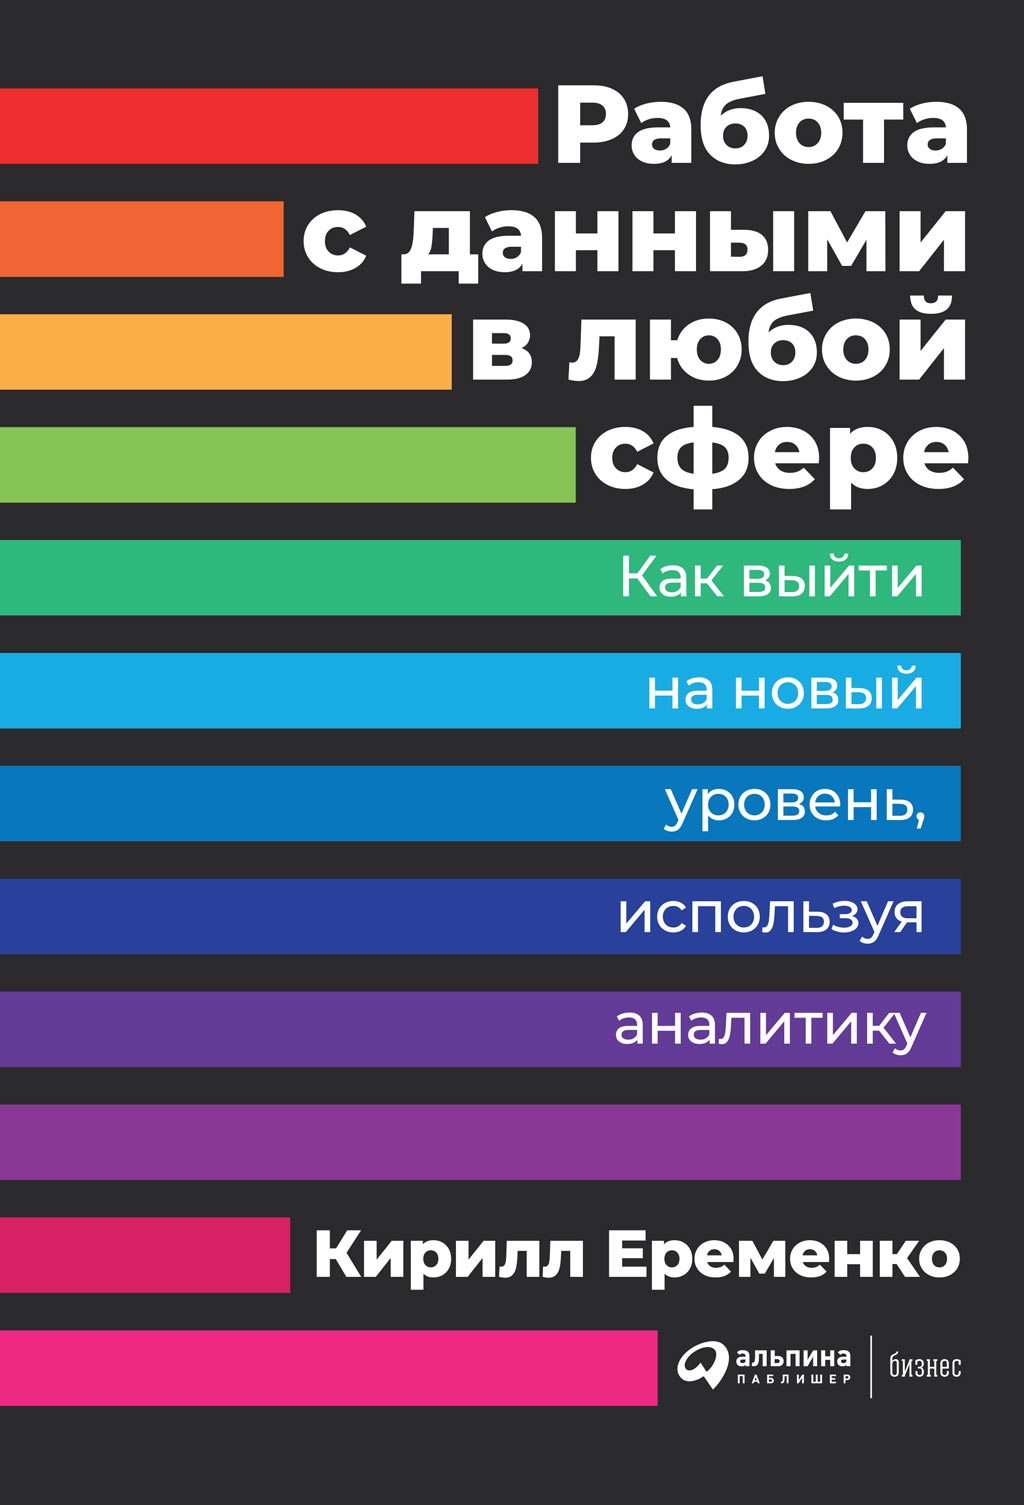 Книга  Работа с данными в любой сфере созданная Кирилл Еременко, Диана Шалаева может относится к жанру базы данных. Стоимость электронной книги Работа с данными в любой сфере с идентификатором 43367095 составляет 399.00 руб.